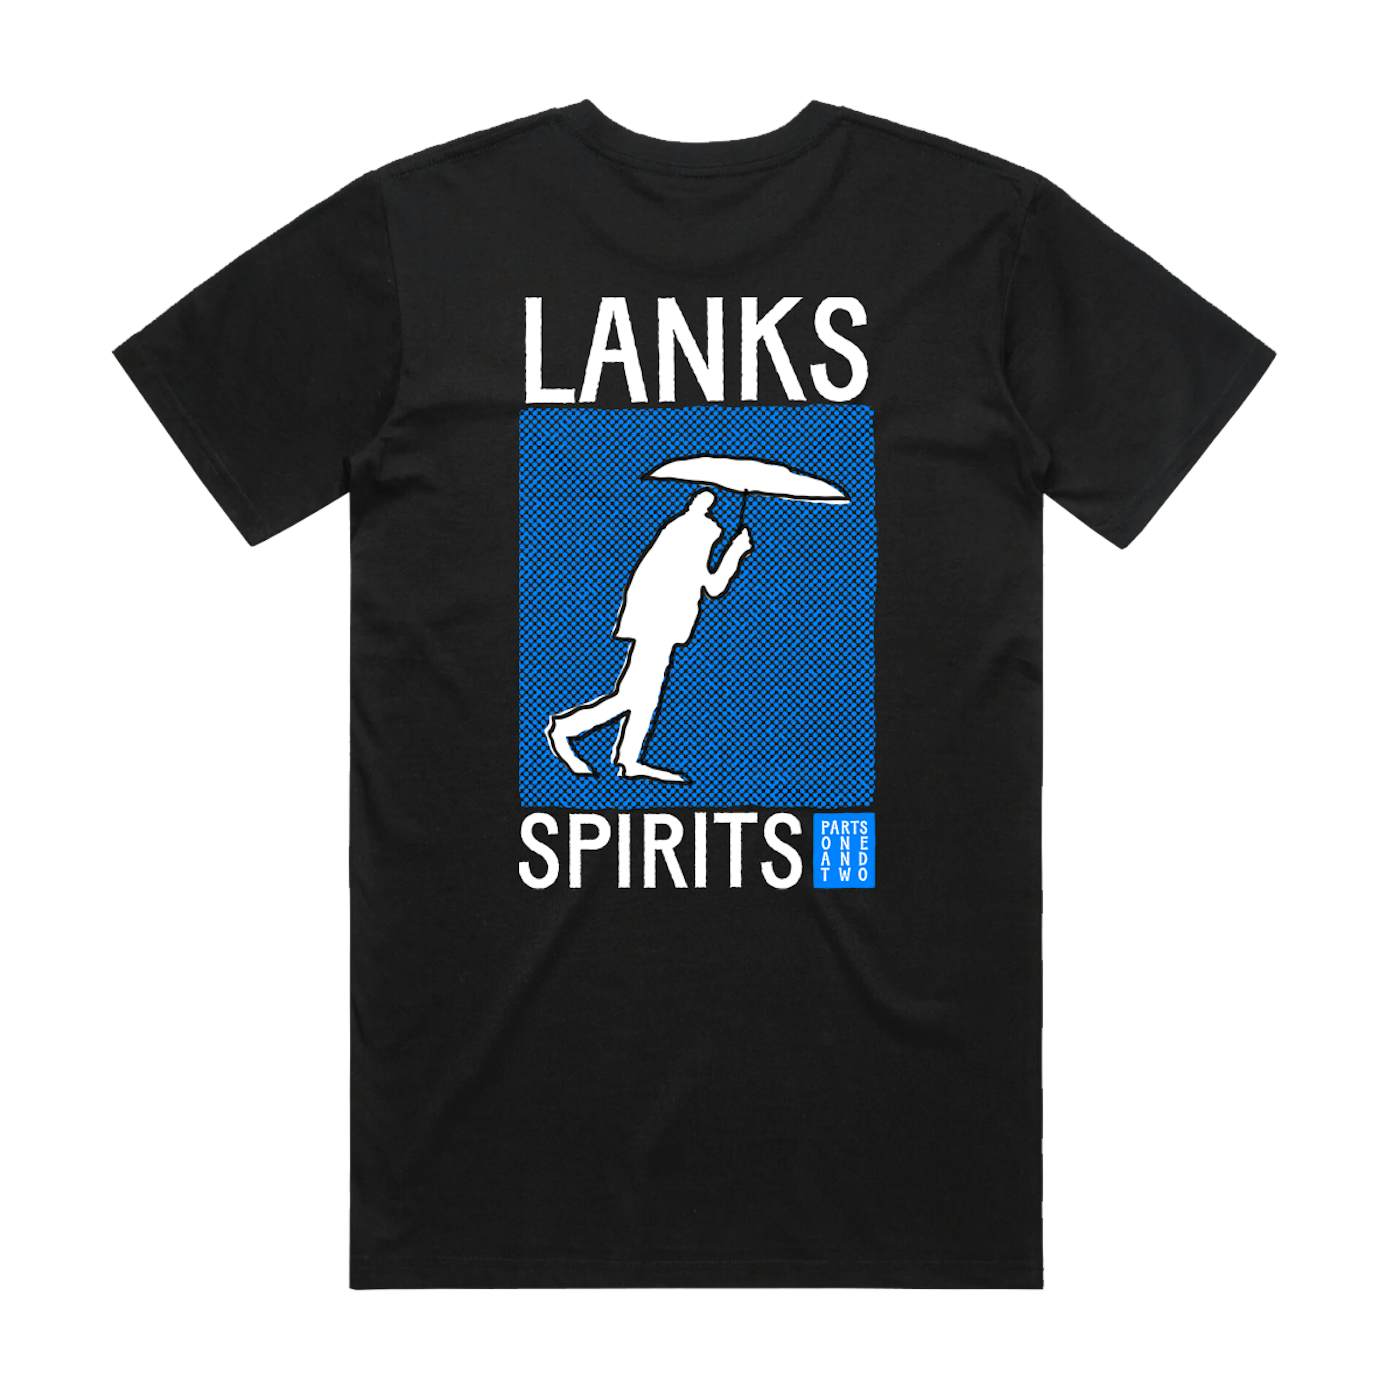 LANKS SPIRITS PT. 1 + 2 — BLACK TEE